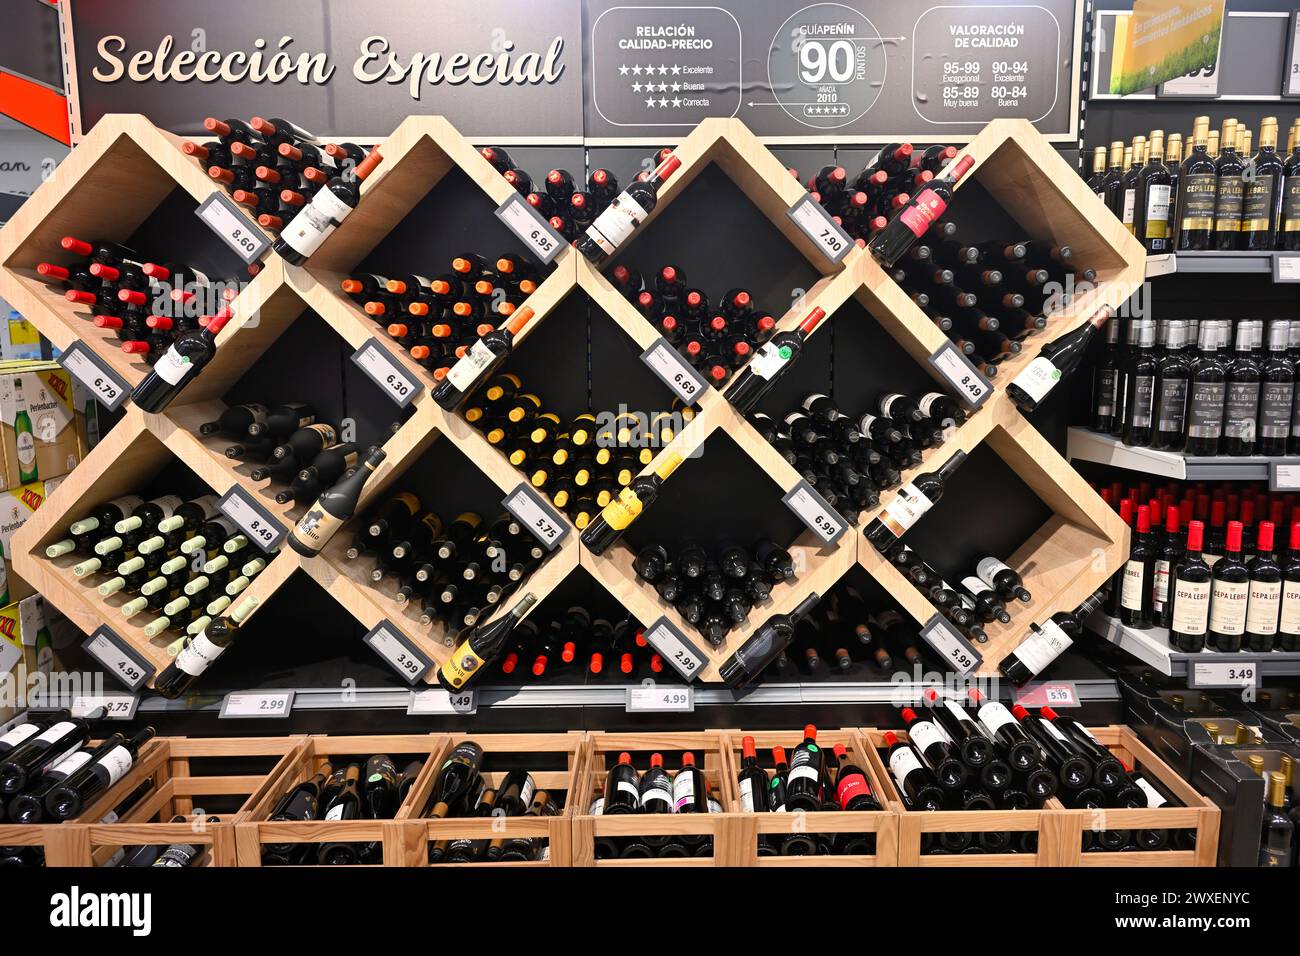 Regale, Ausstellungsregale, voller Weinflaschen im Lidl Supermarkt, Spanien Stockfoto